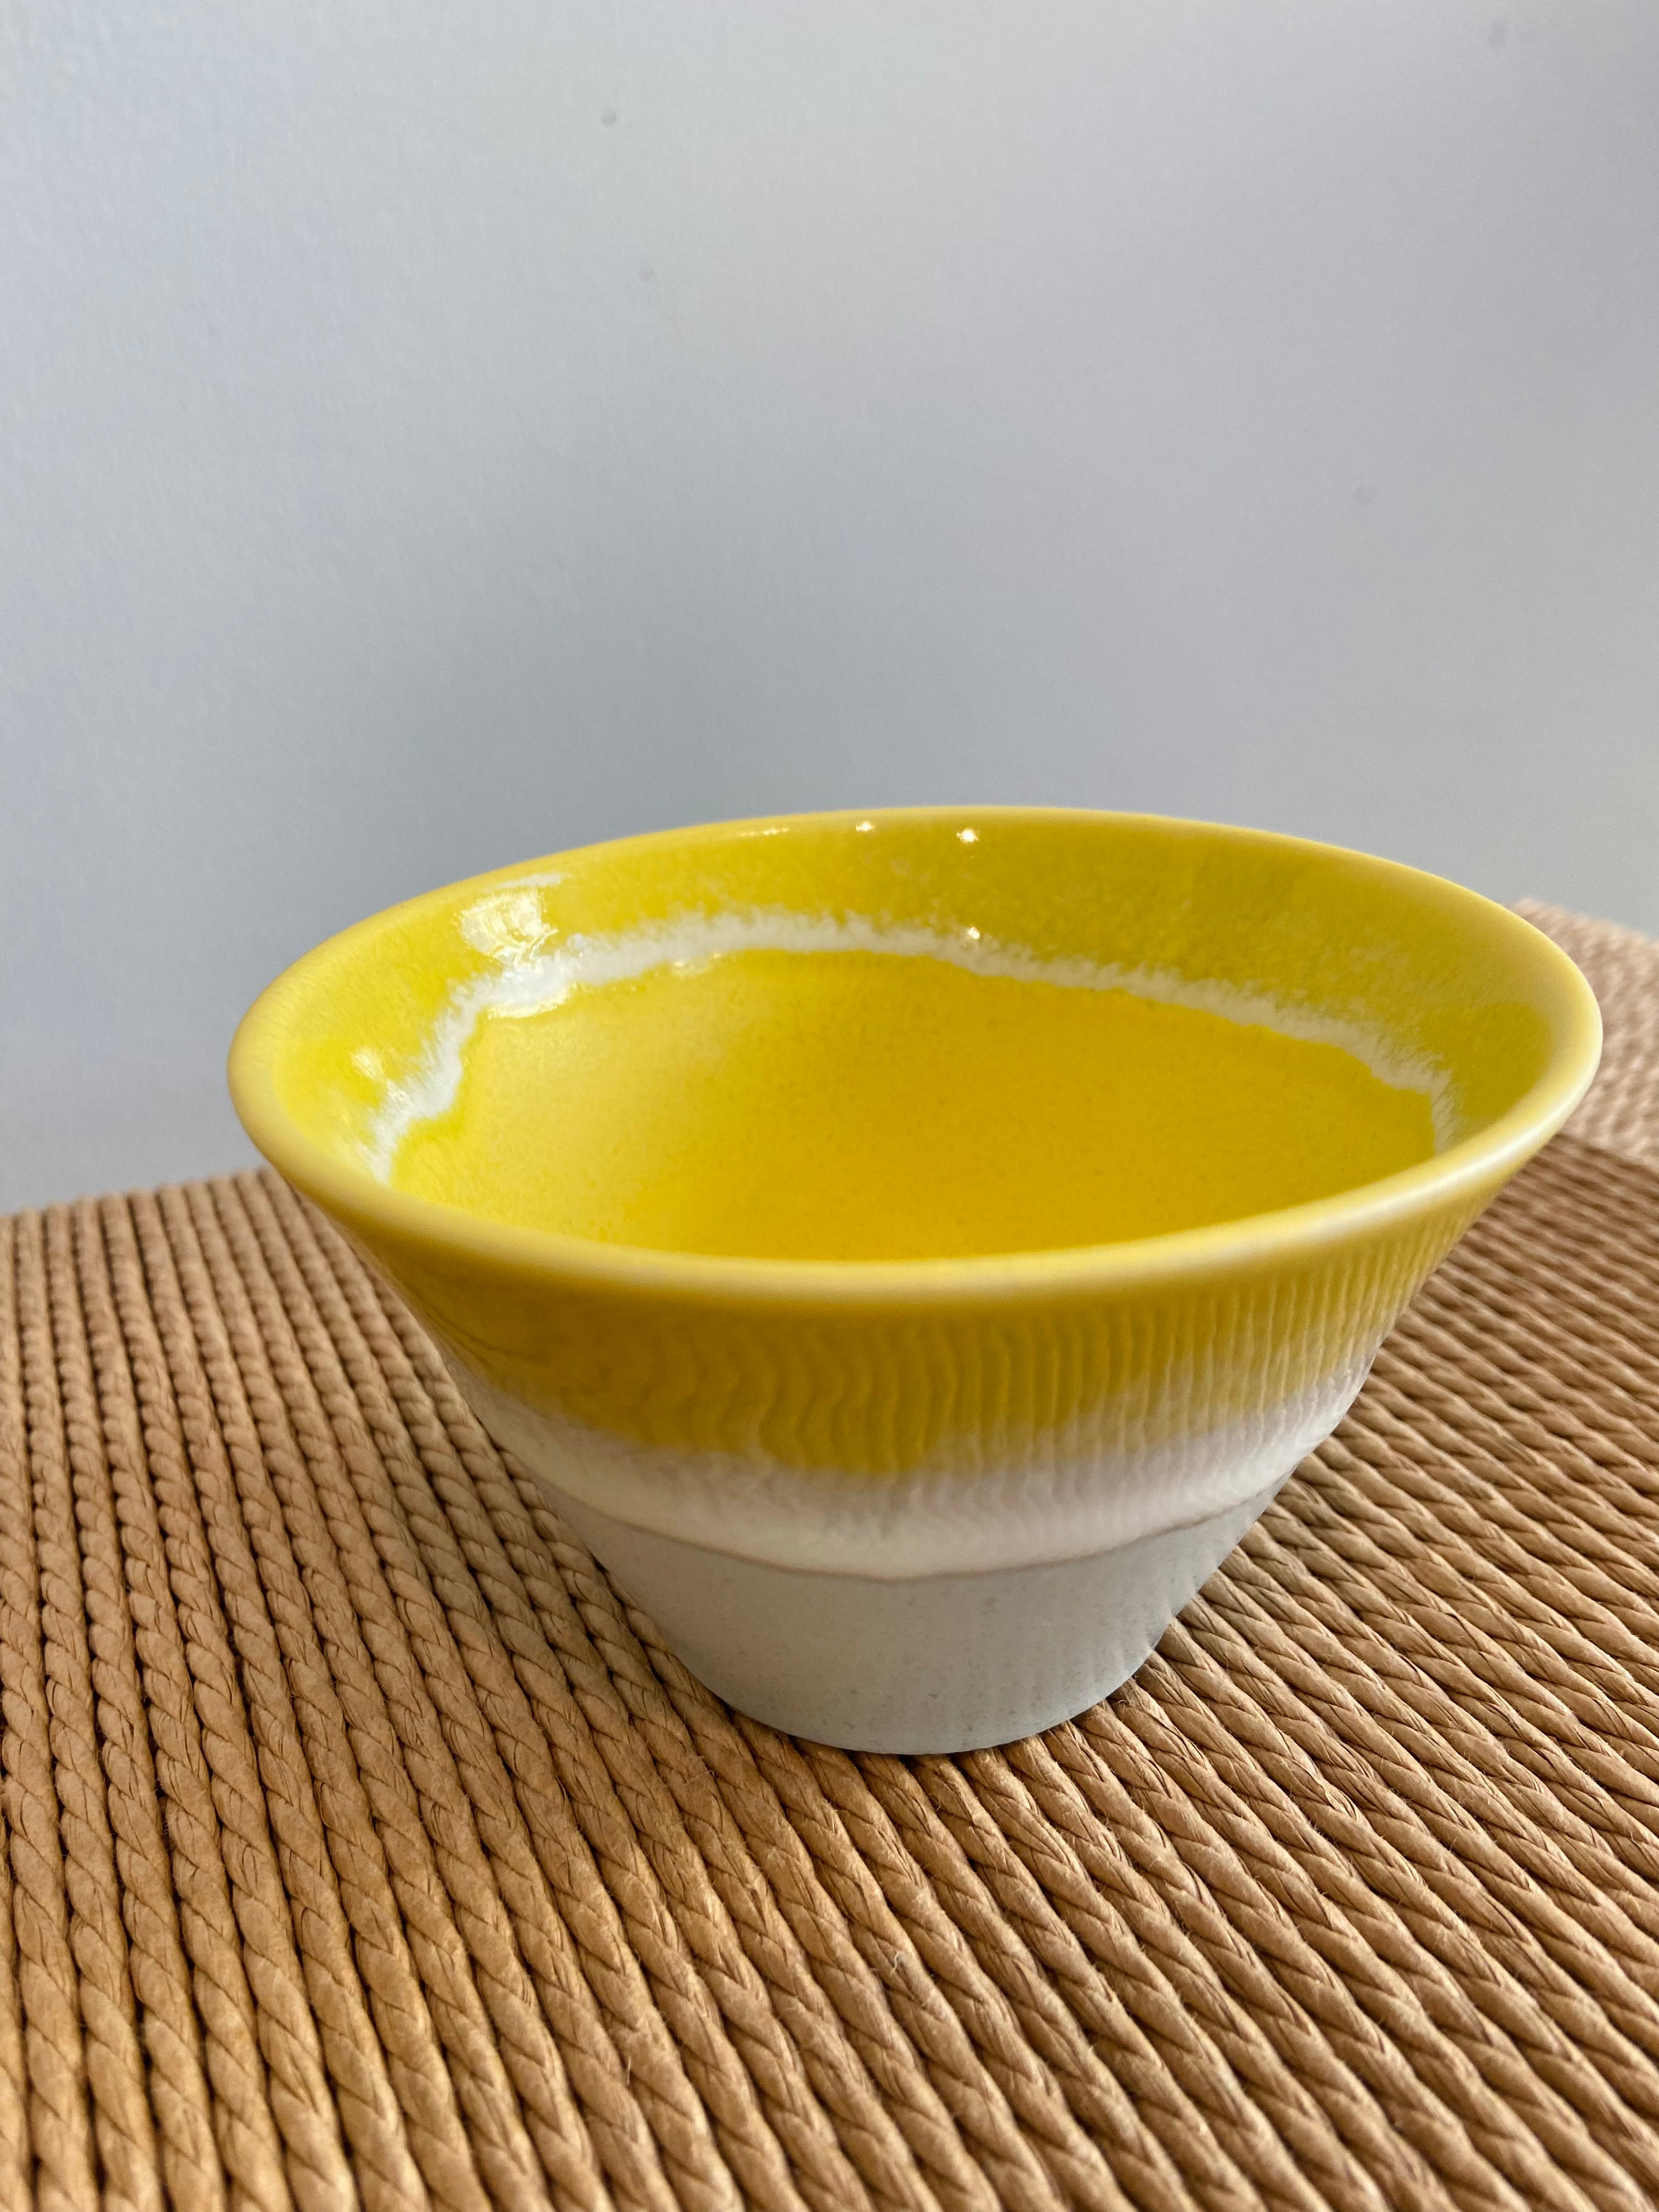 Bowl with yellow glaze